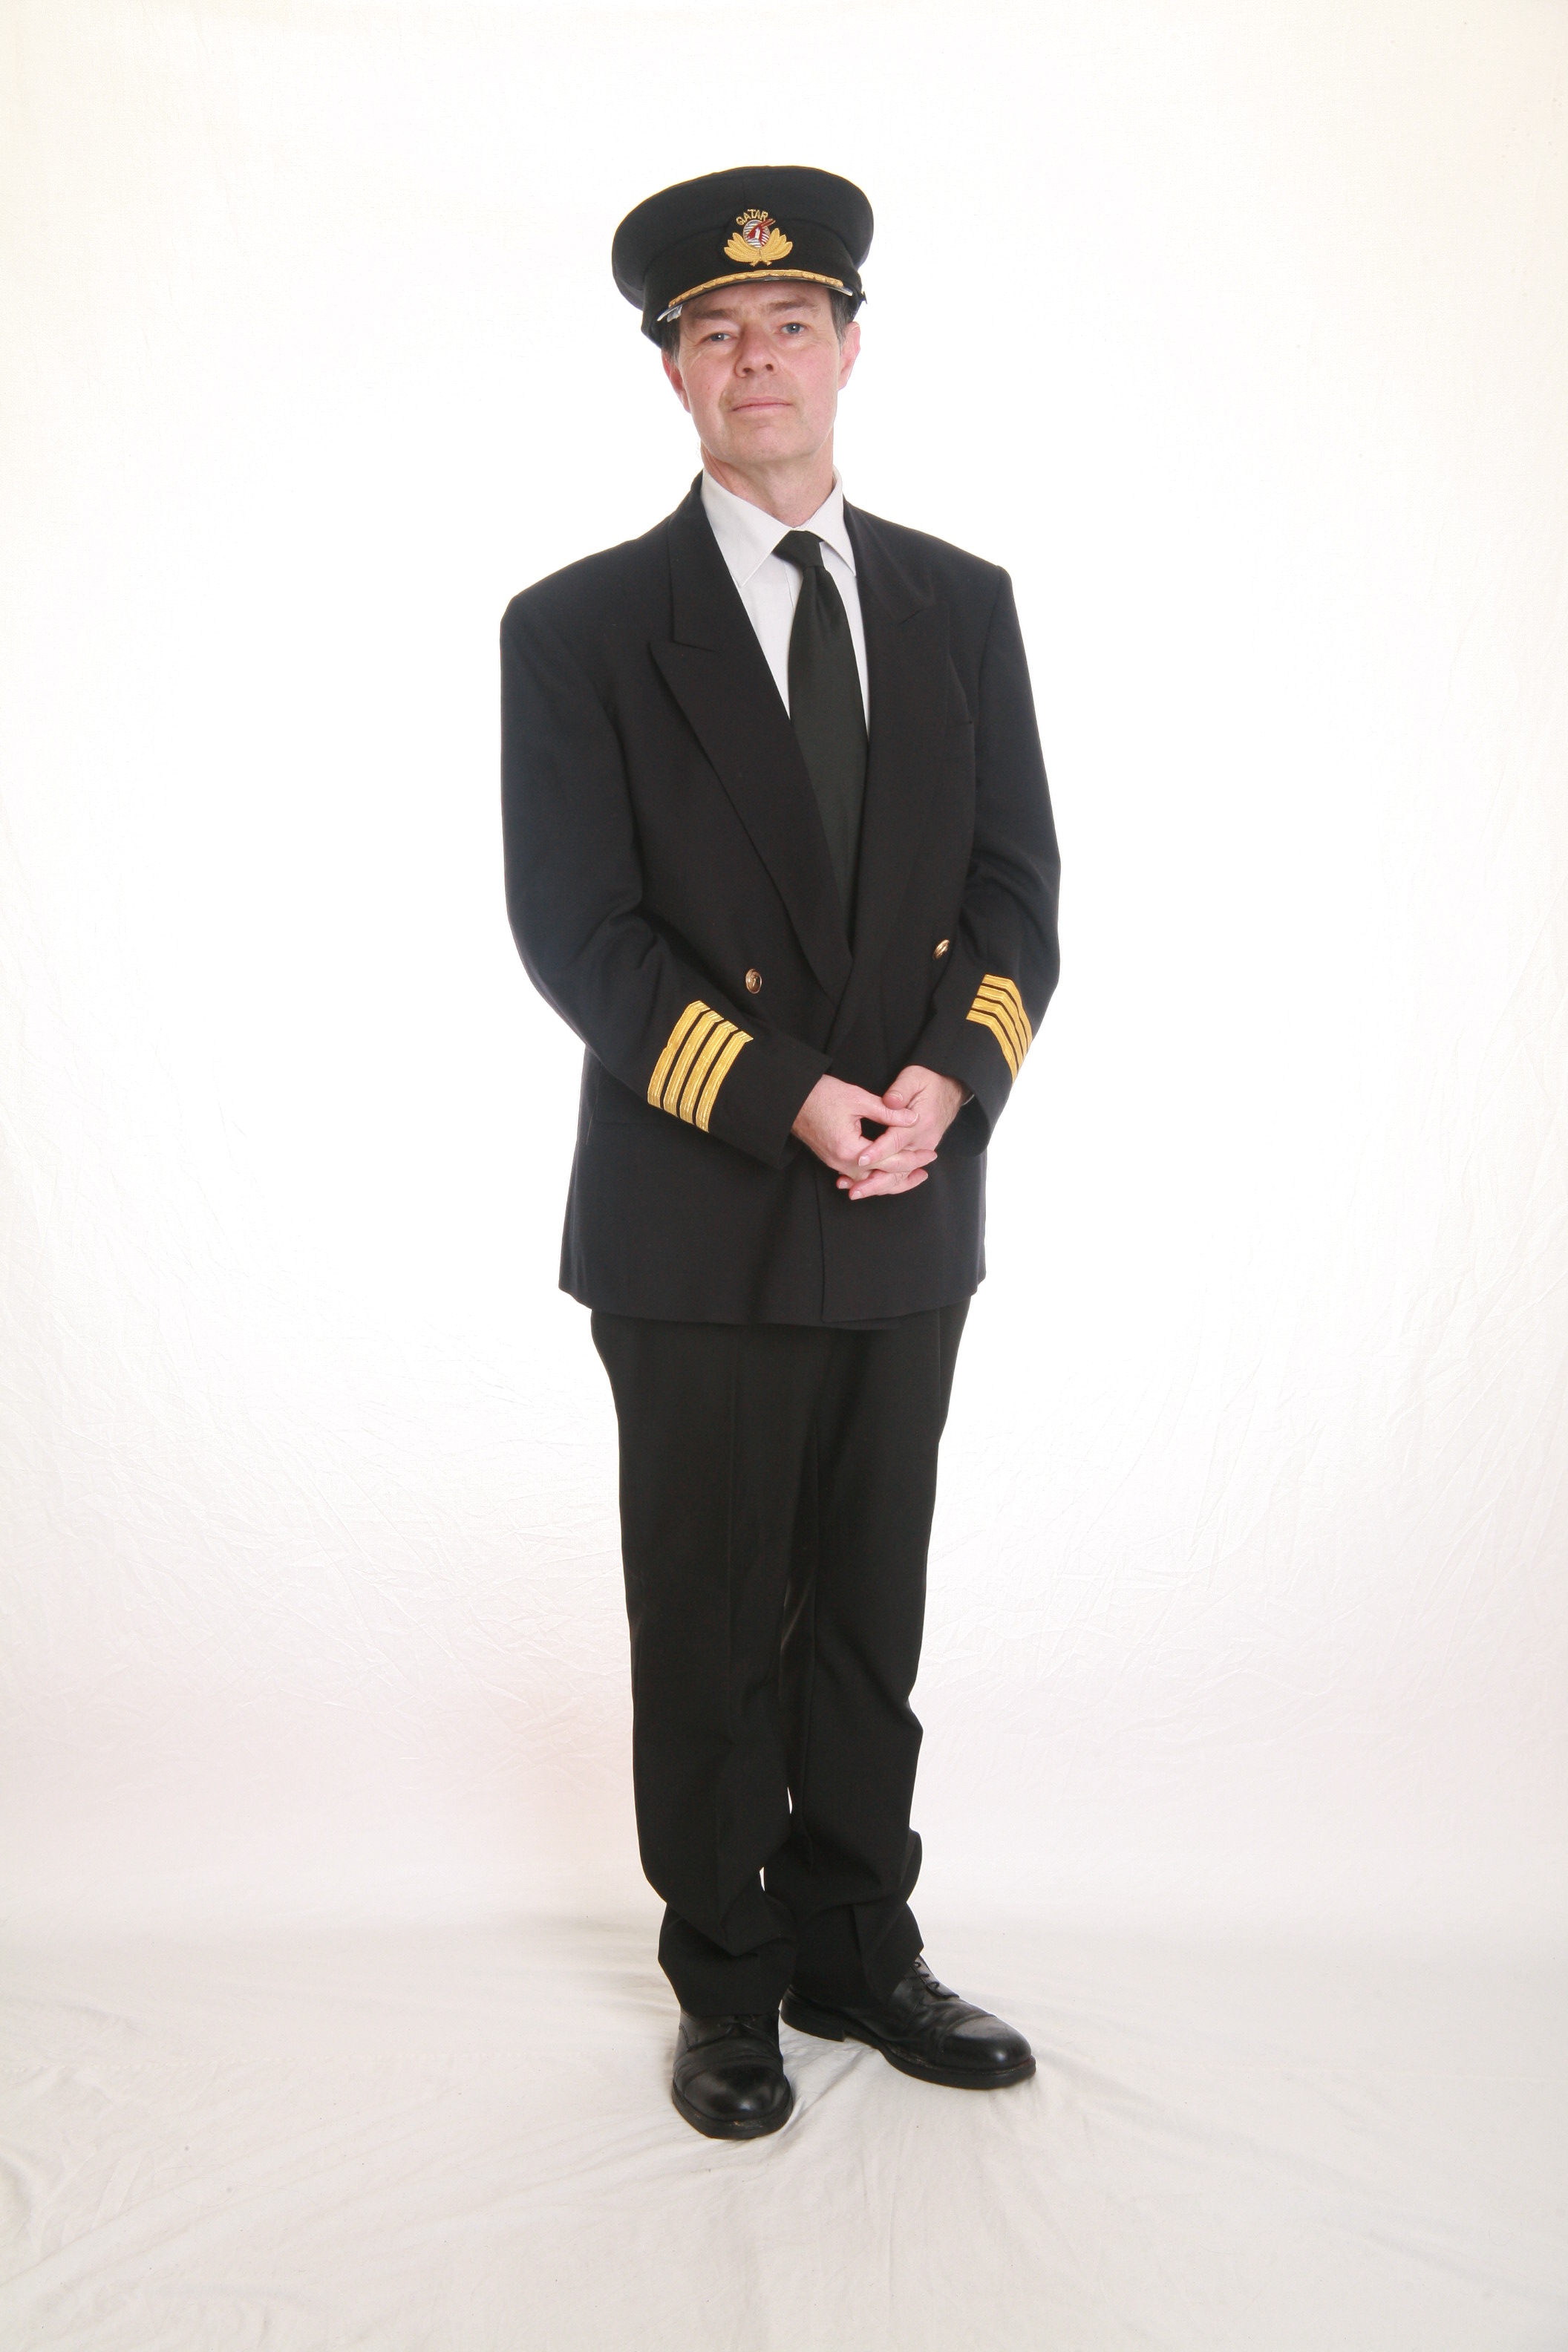 Airline Pilot (my uniform)